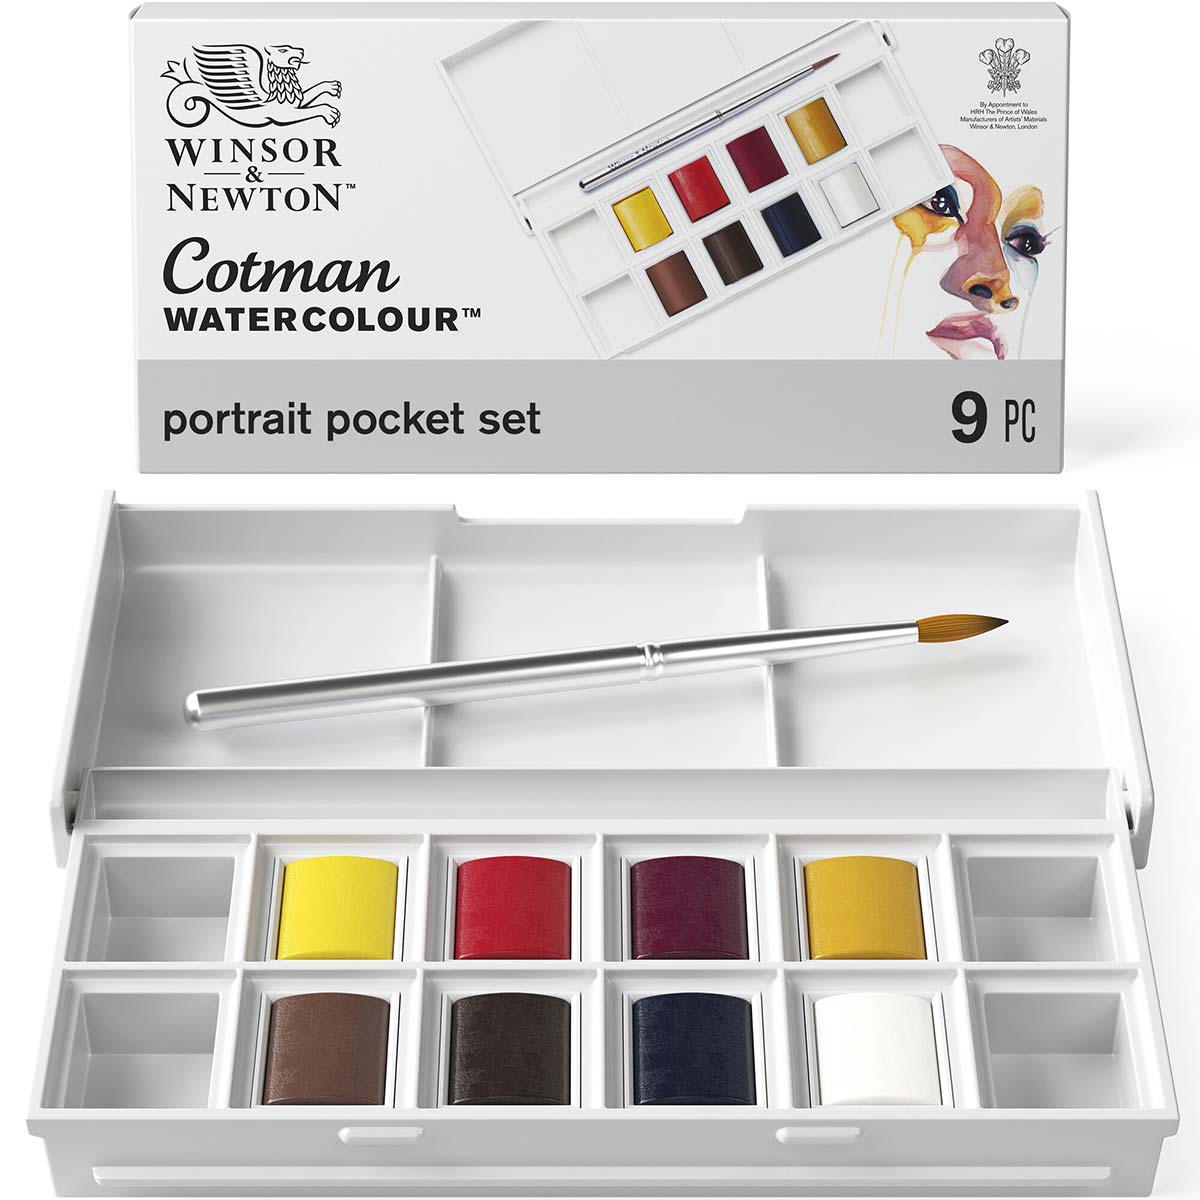 Winsor & Newton - Cotman Watercolour - Pocket Set - Portrait